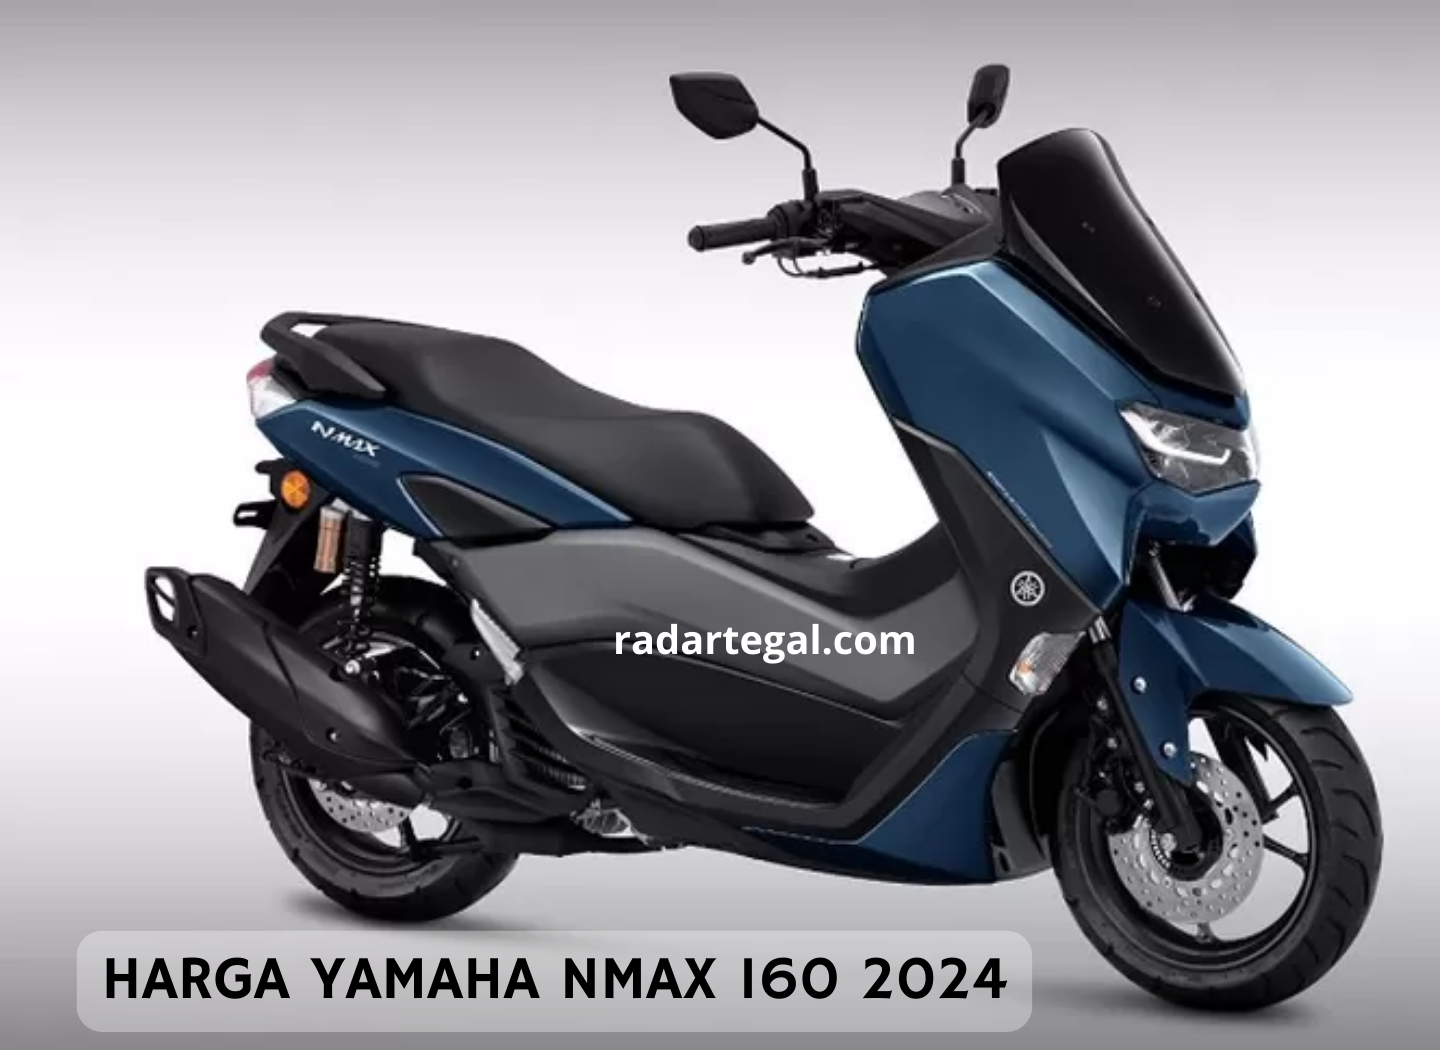 Alami Banyak Perubahan, Ini Harga Yamaha Nmax 160 2024 Terbaru